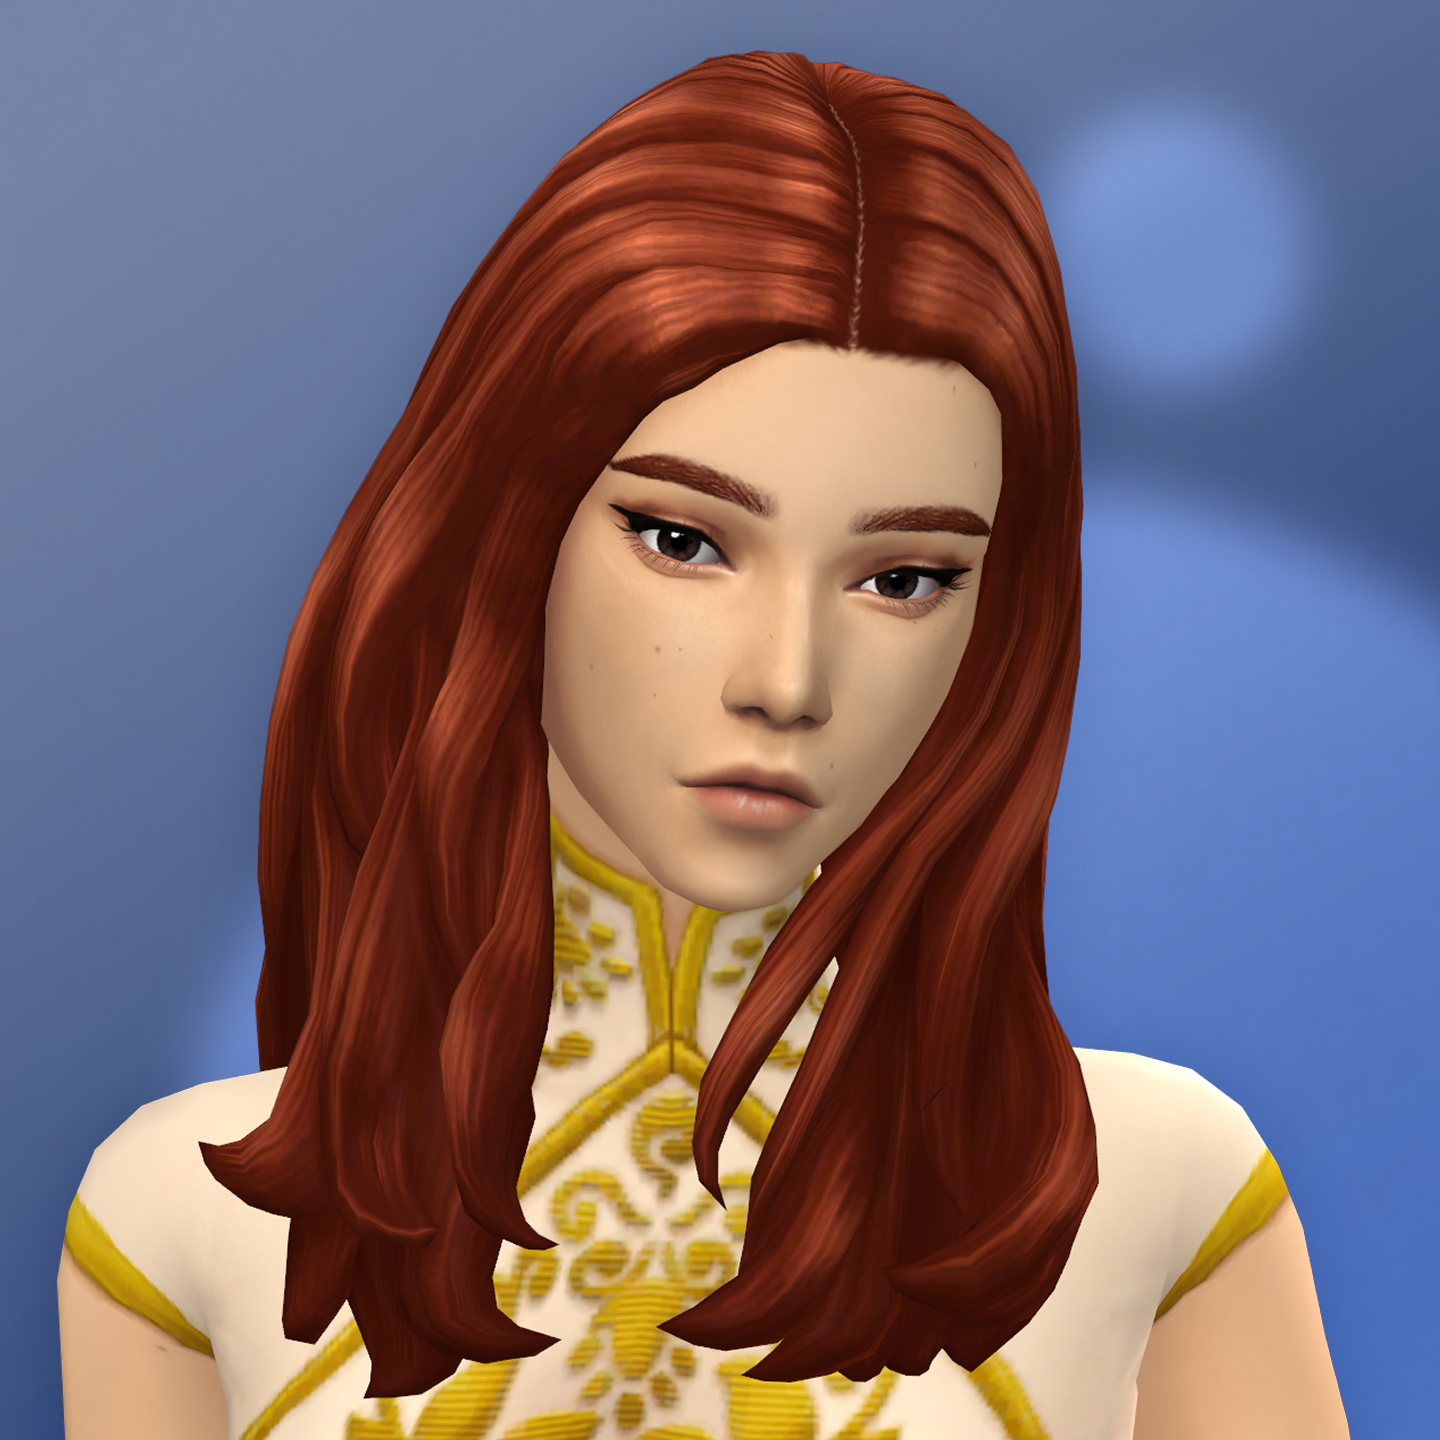 QICC - Claire Hair - The Sims 4 Create a Sim - CurseForge